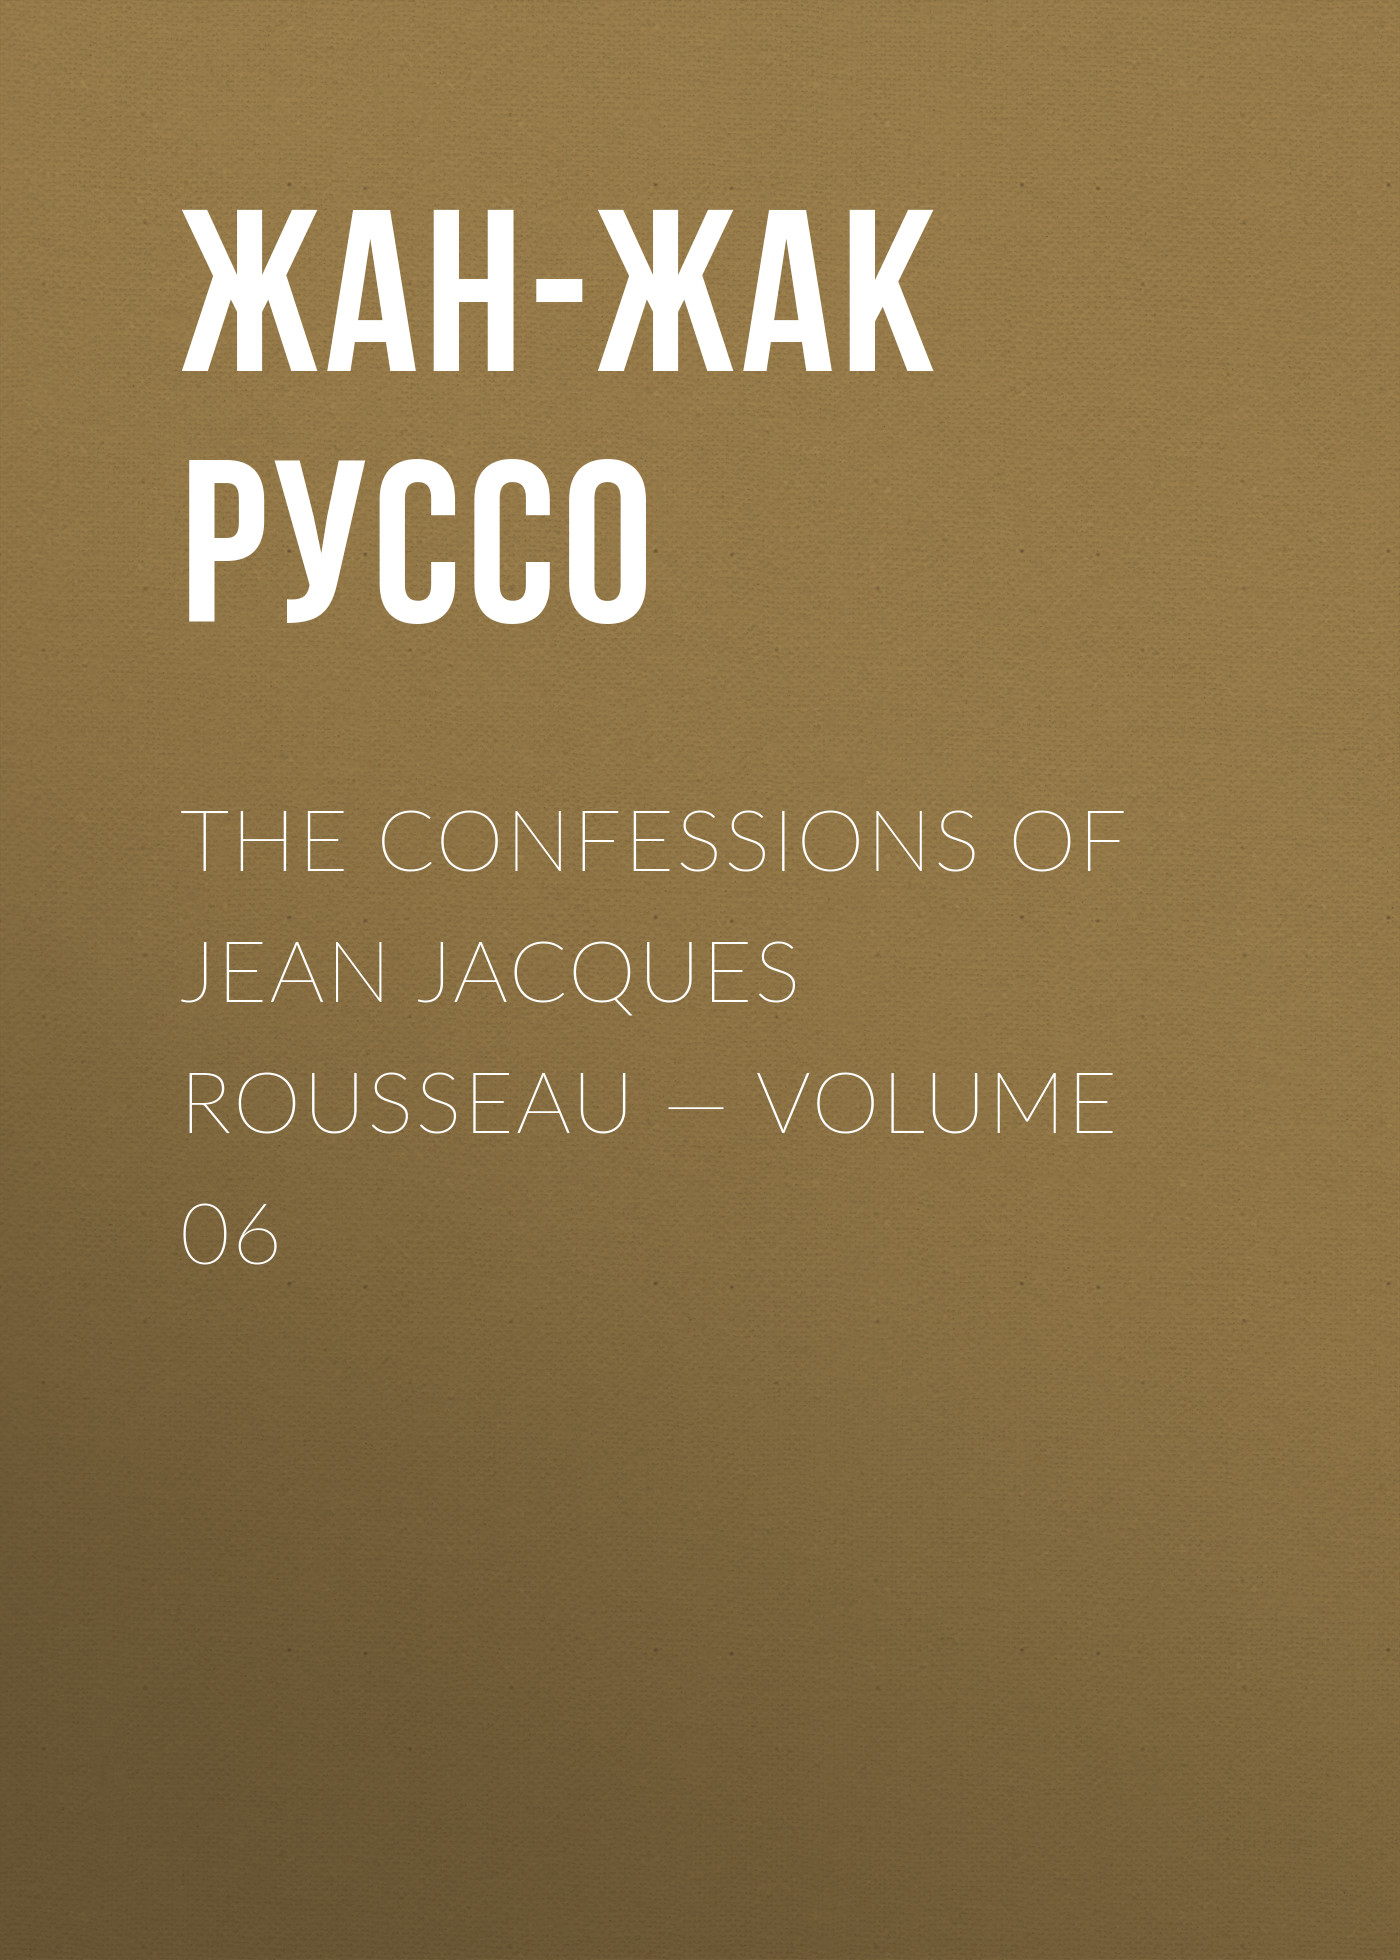 Книга The Confessions of Jean Jacques Rousseau – Volume 06 из серии , созданная Жан-Жак Руссо, может относится к жанру Биографии и Мемуары, Литература 18 века, Зарубежная старинная литература. Стоимость электронной книги The Confessions of Jean Jacques Rousseau – Volume 06 с идентификатором 34840142 составляет 0 руб.